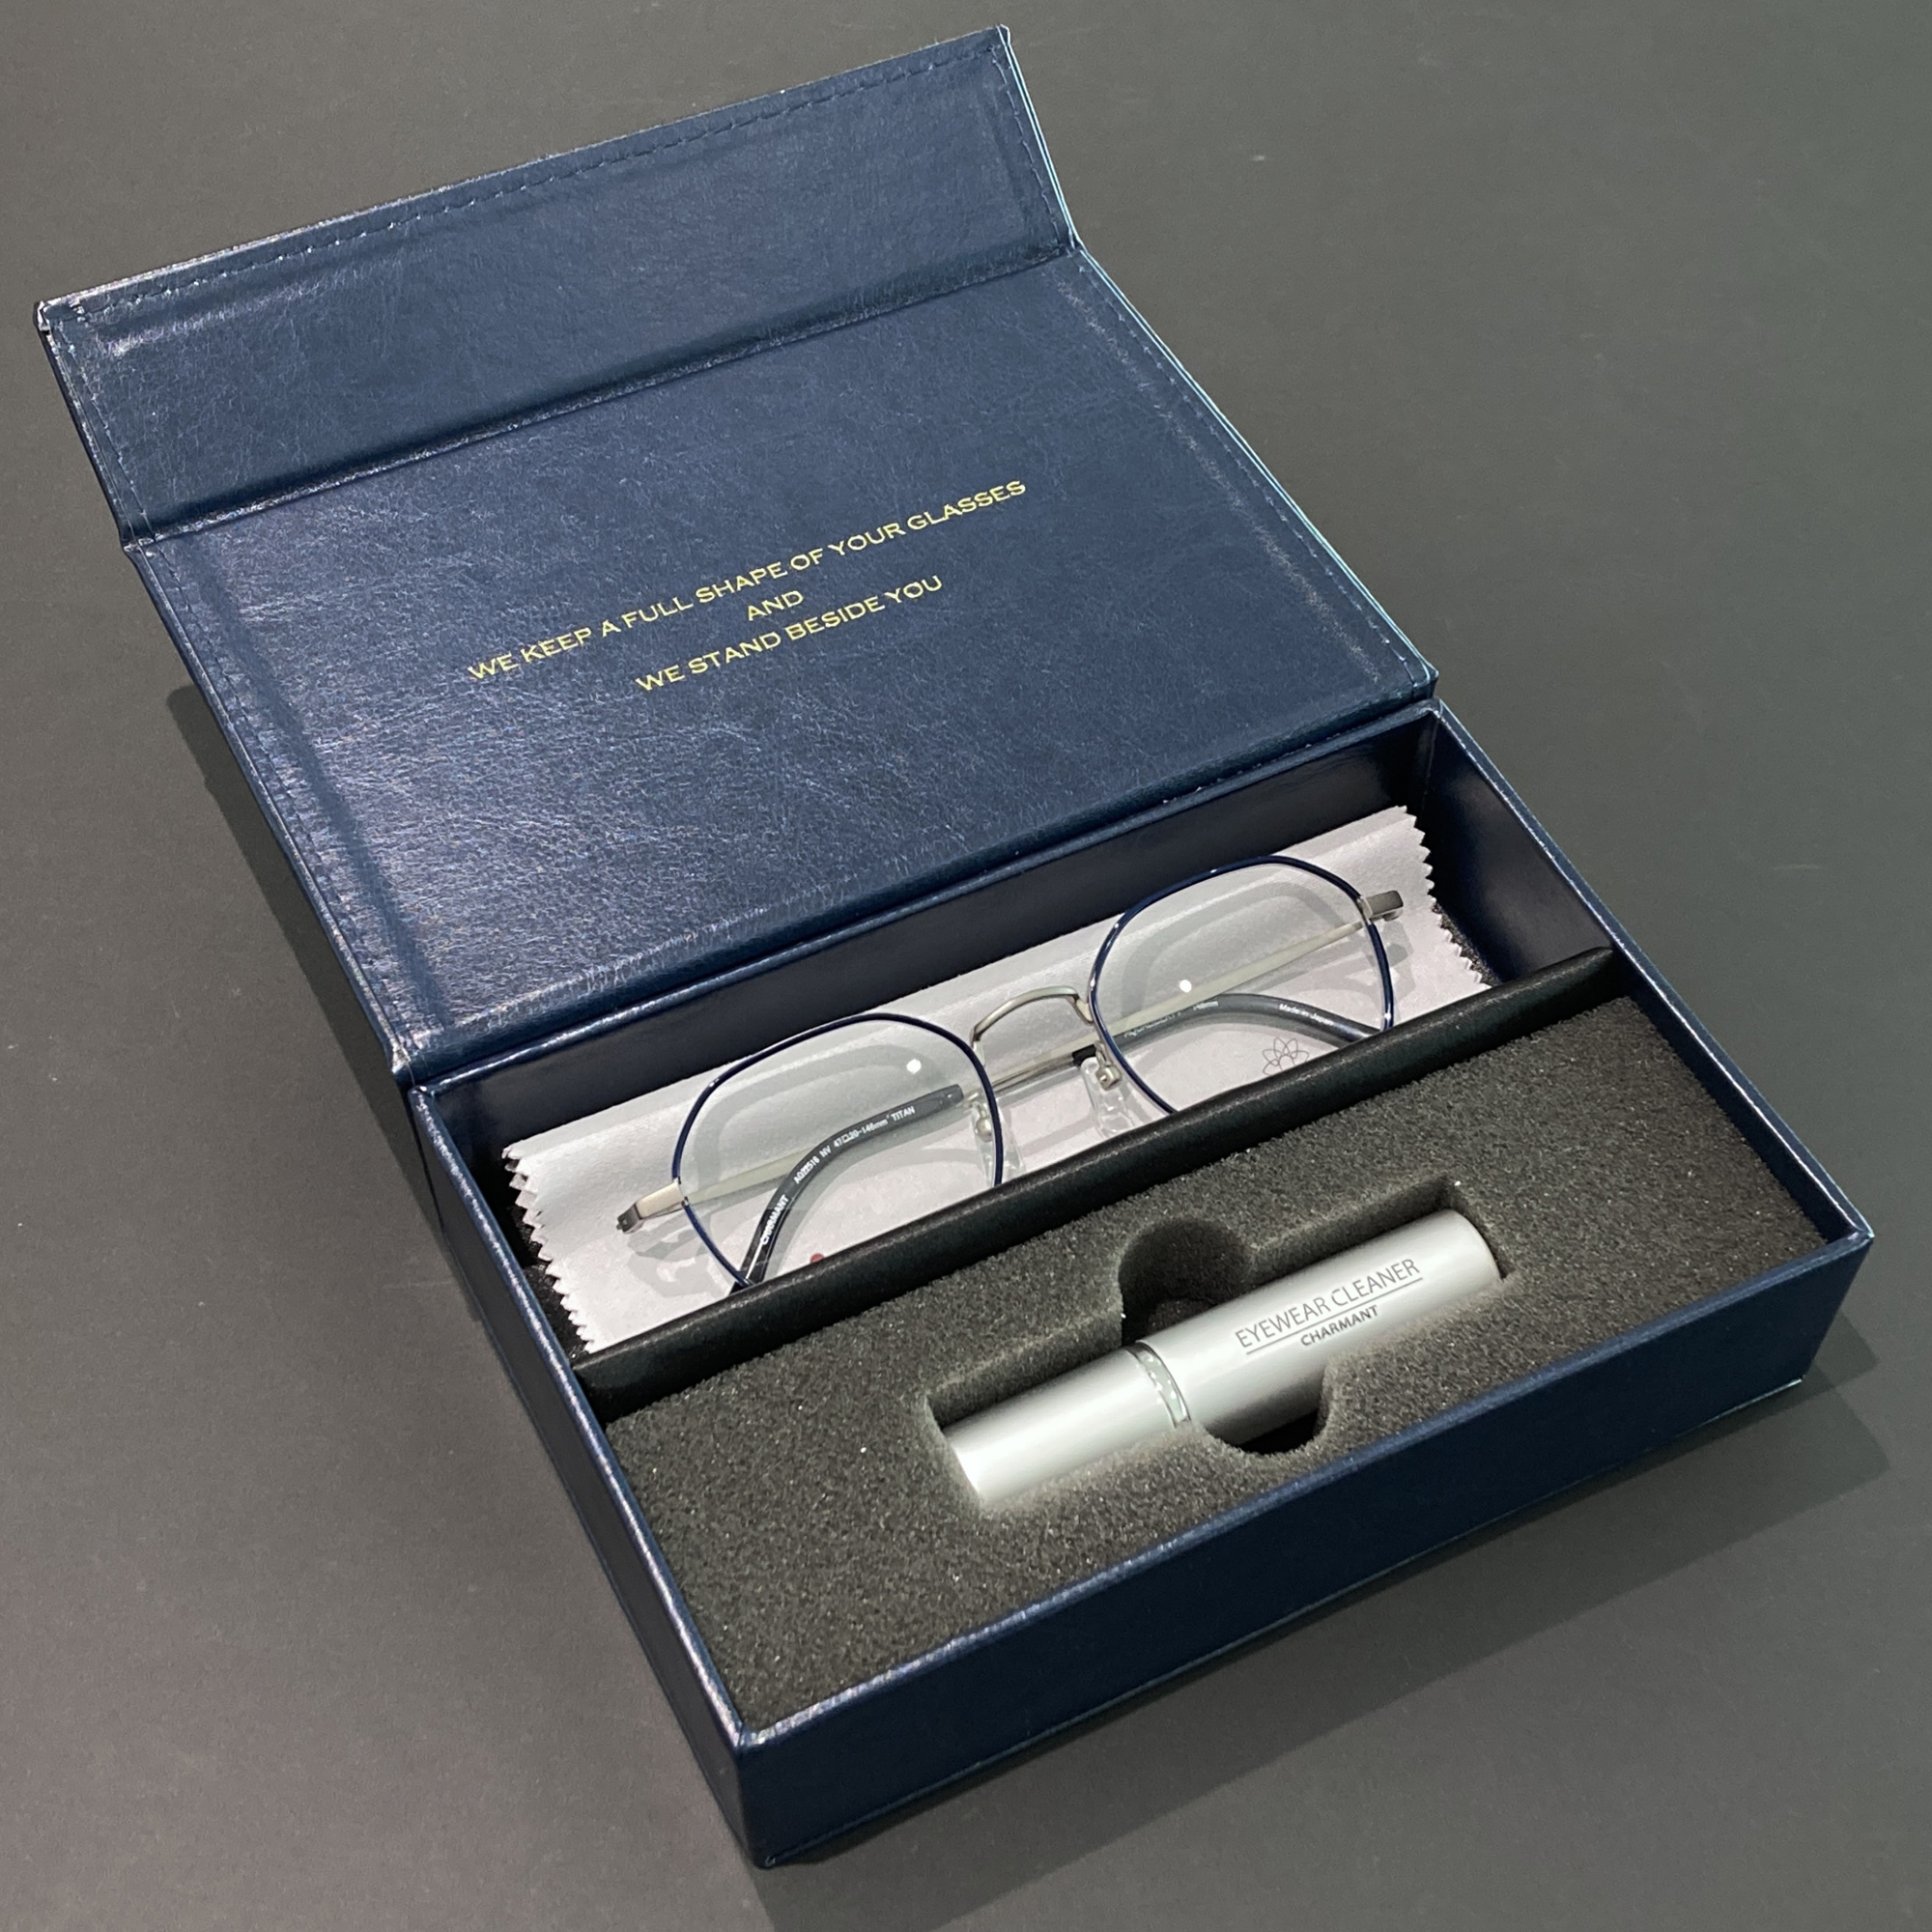 2本収納 眼鏡ケース メガネ拭き 抗菌クリーナー 日本製 おしゃれ スリム コンパクト メガネケース SH466 99 NB